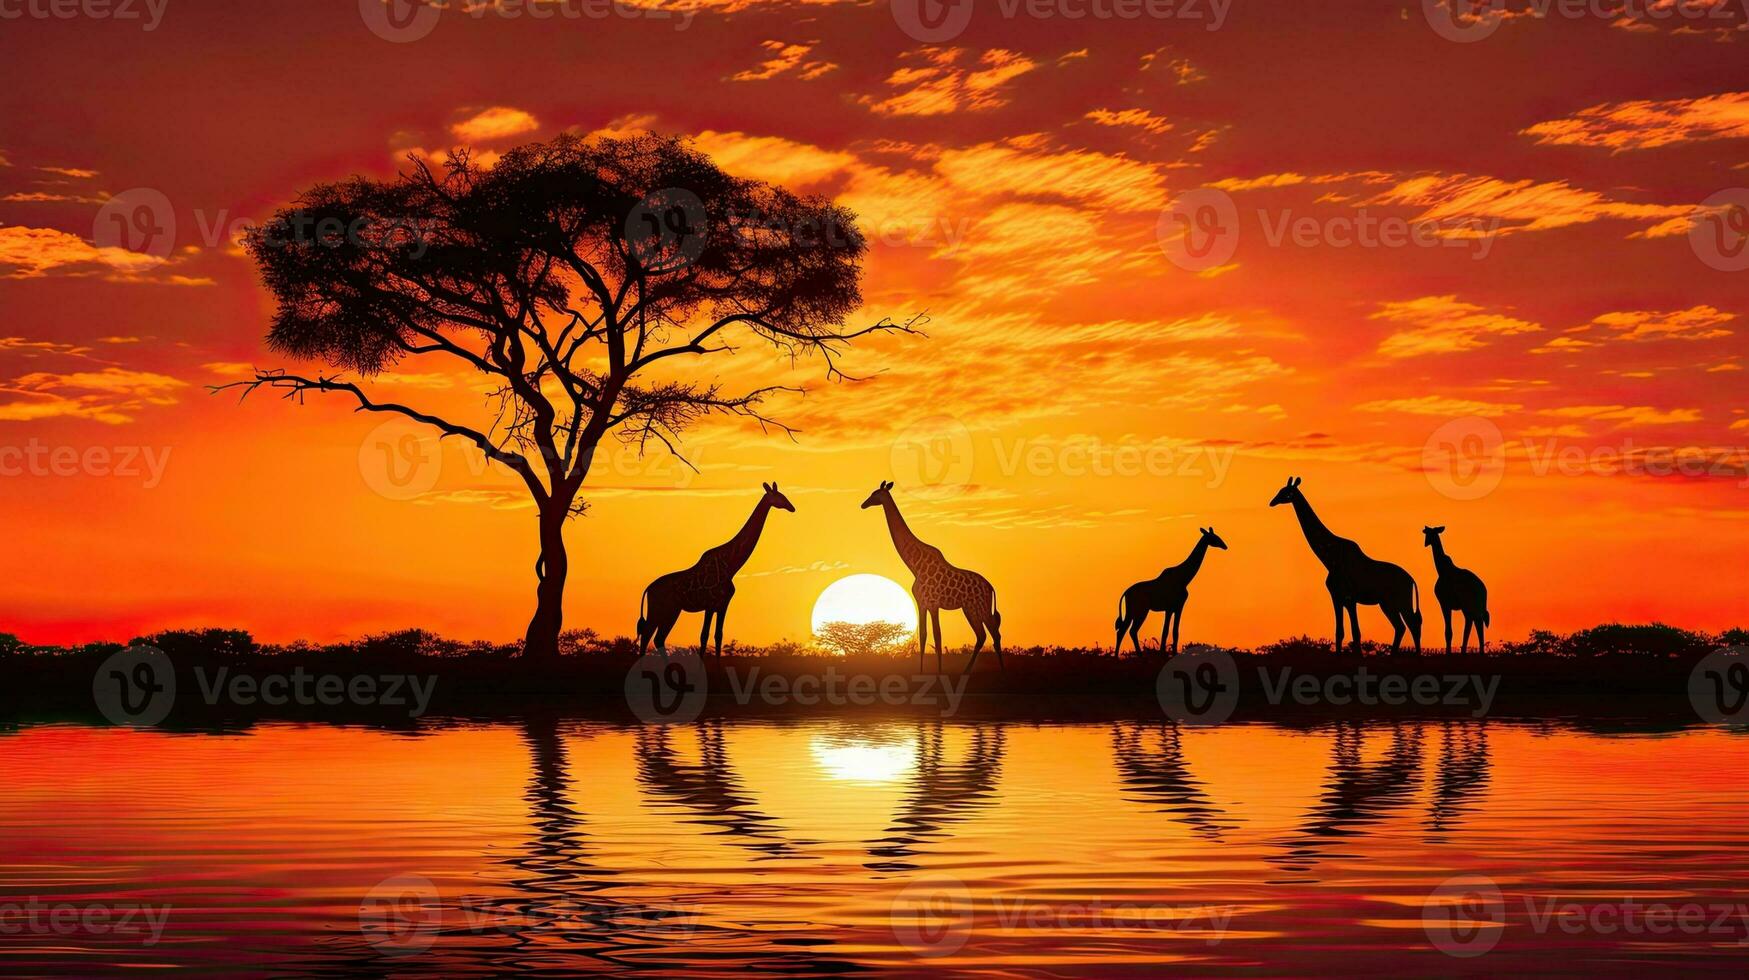 masaï mara s typique africain le coucher du soleil avec acacia des arbres et une girafe famille silhouette contre une réglage Soleil réfléchi sur l'eau photo